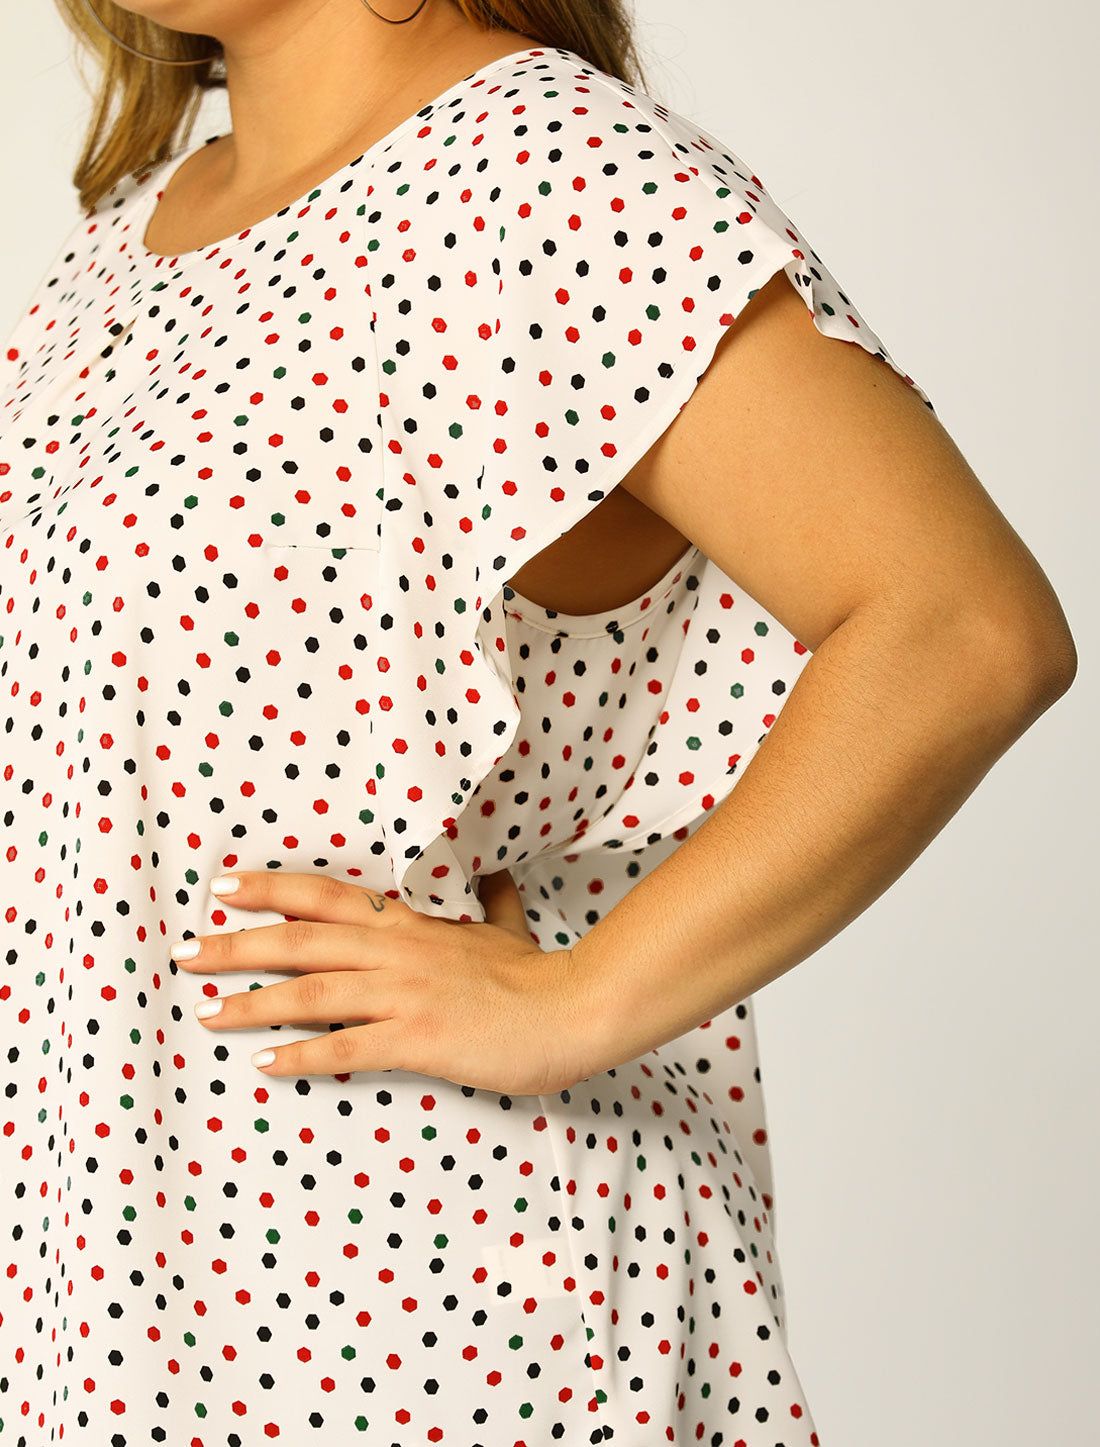 Bublédon Women's Plus Size Chiffon Polka Dot Tank Top